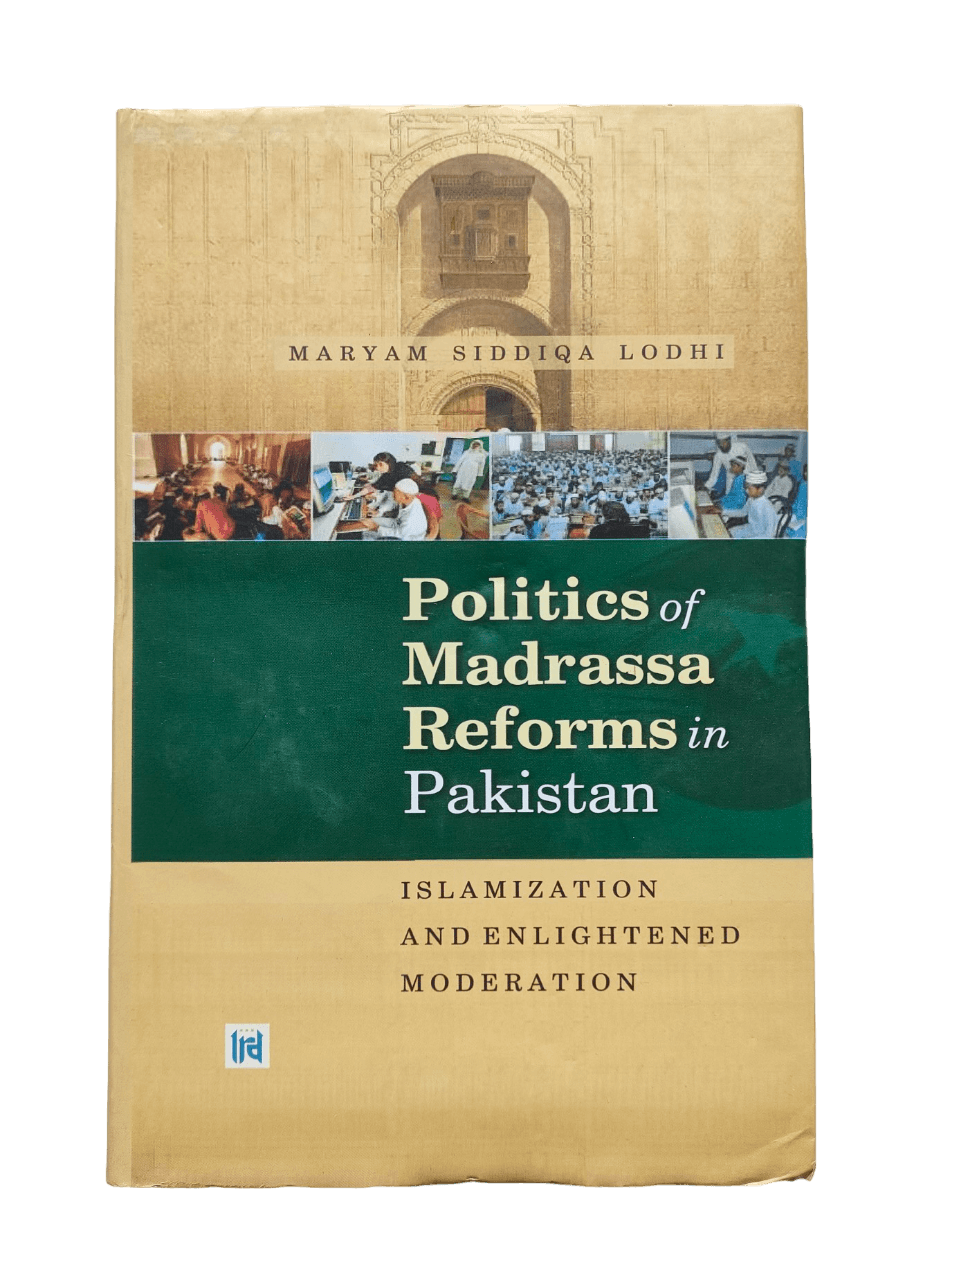 Politics of Madrassa Reform in Pakistan - KHAJISTAN™